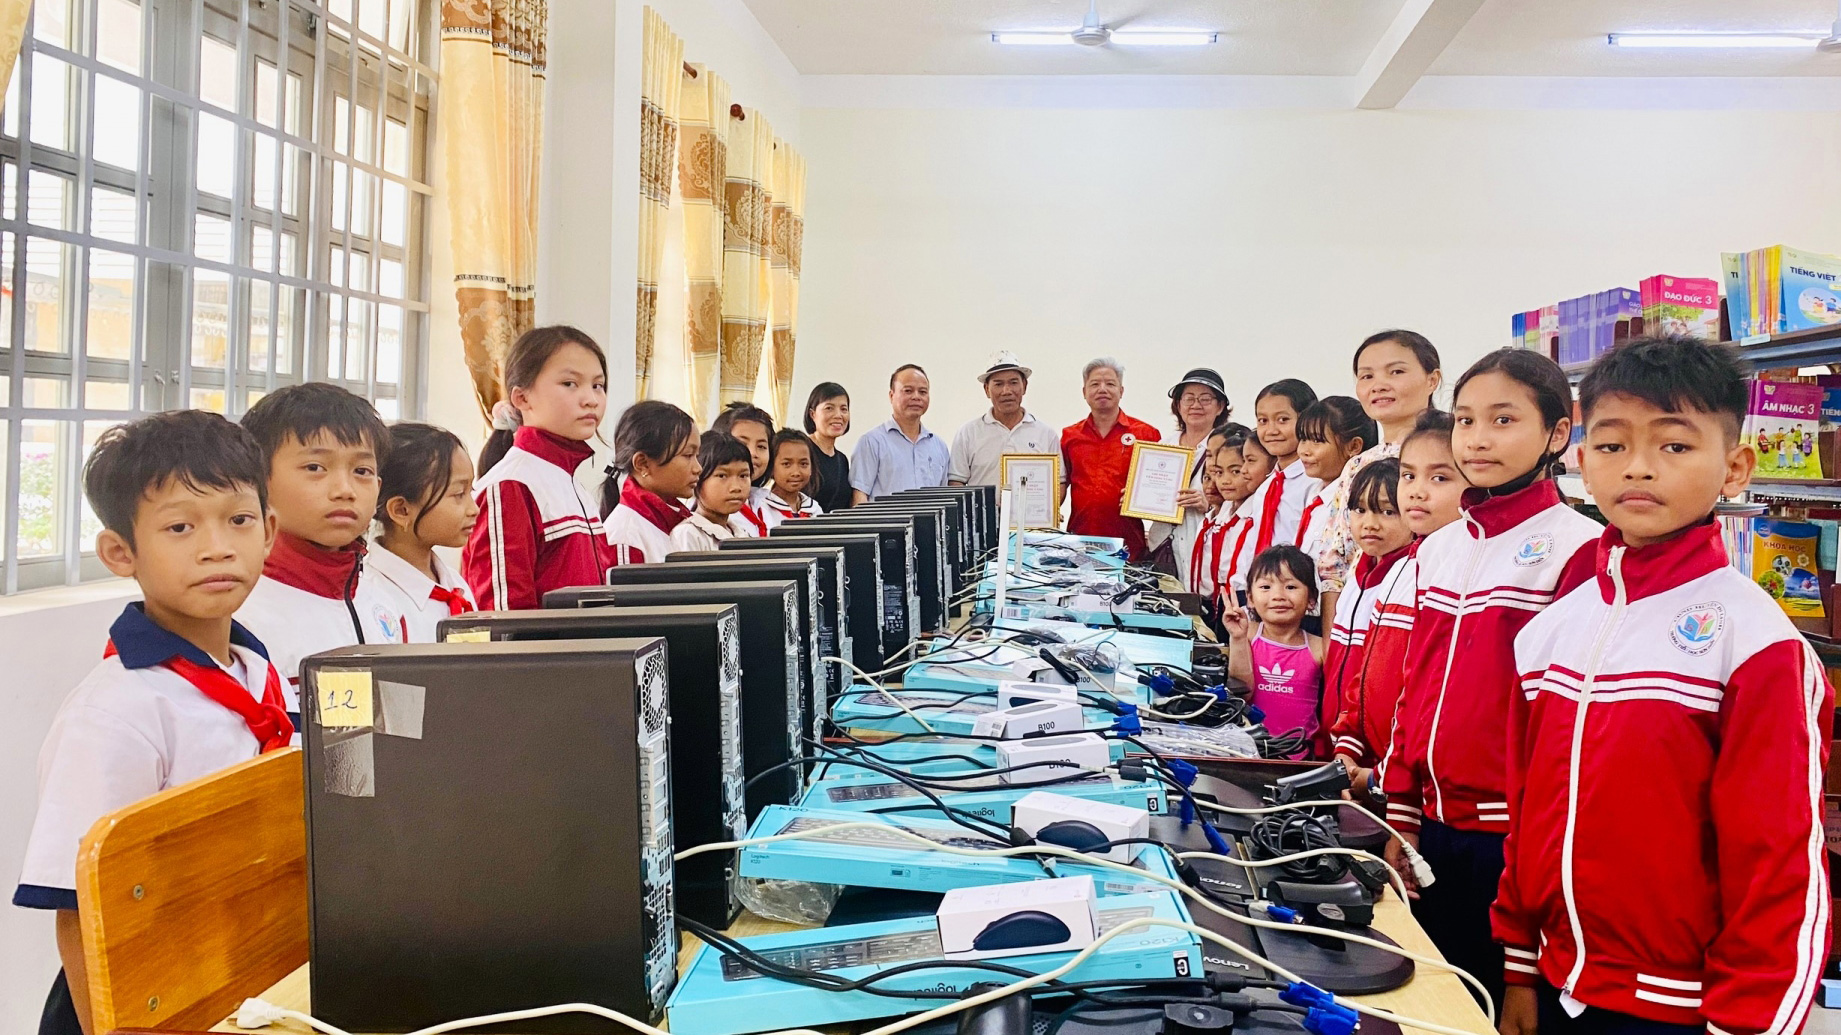 Hội Chữ thập đỏ huyện Di Linh cùng các nhà tài trợ trao tặng 15 chiếc máy tính cho Trường Tiểu học Sơn Điền